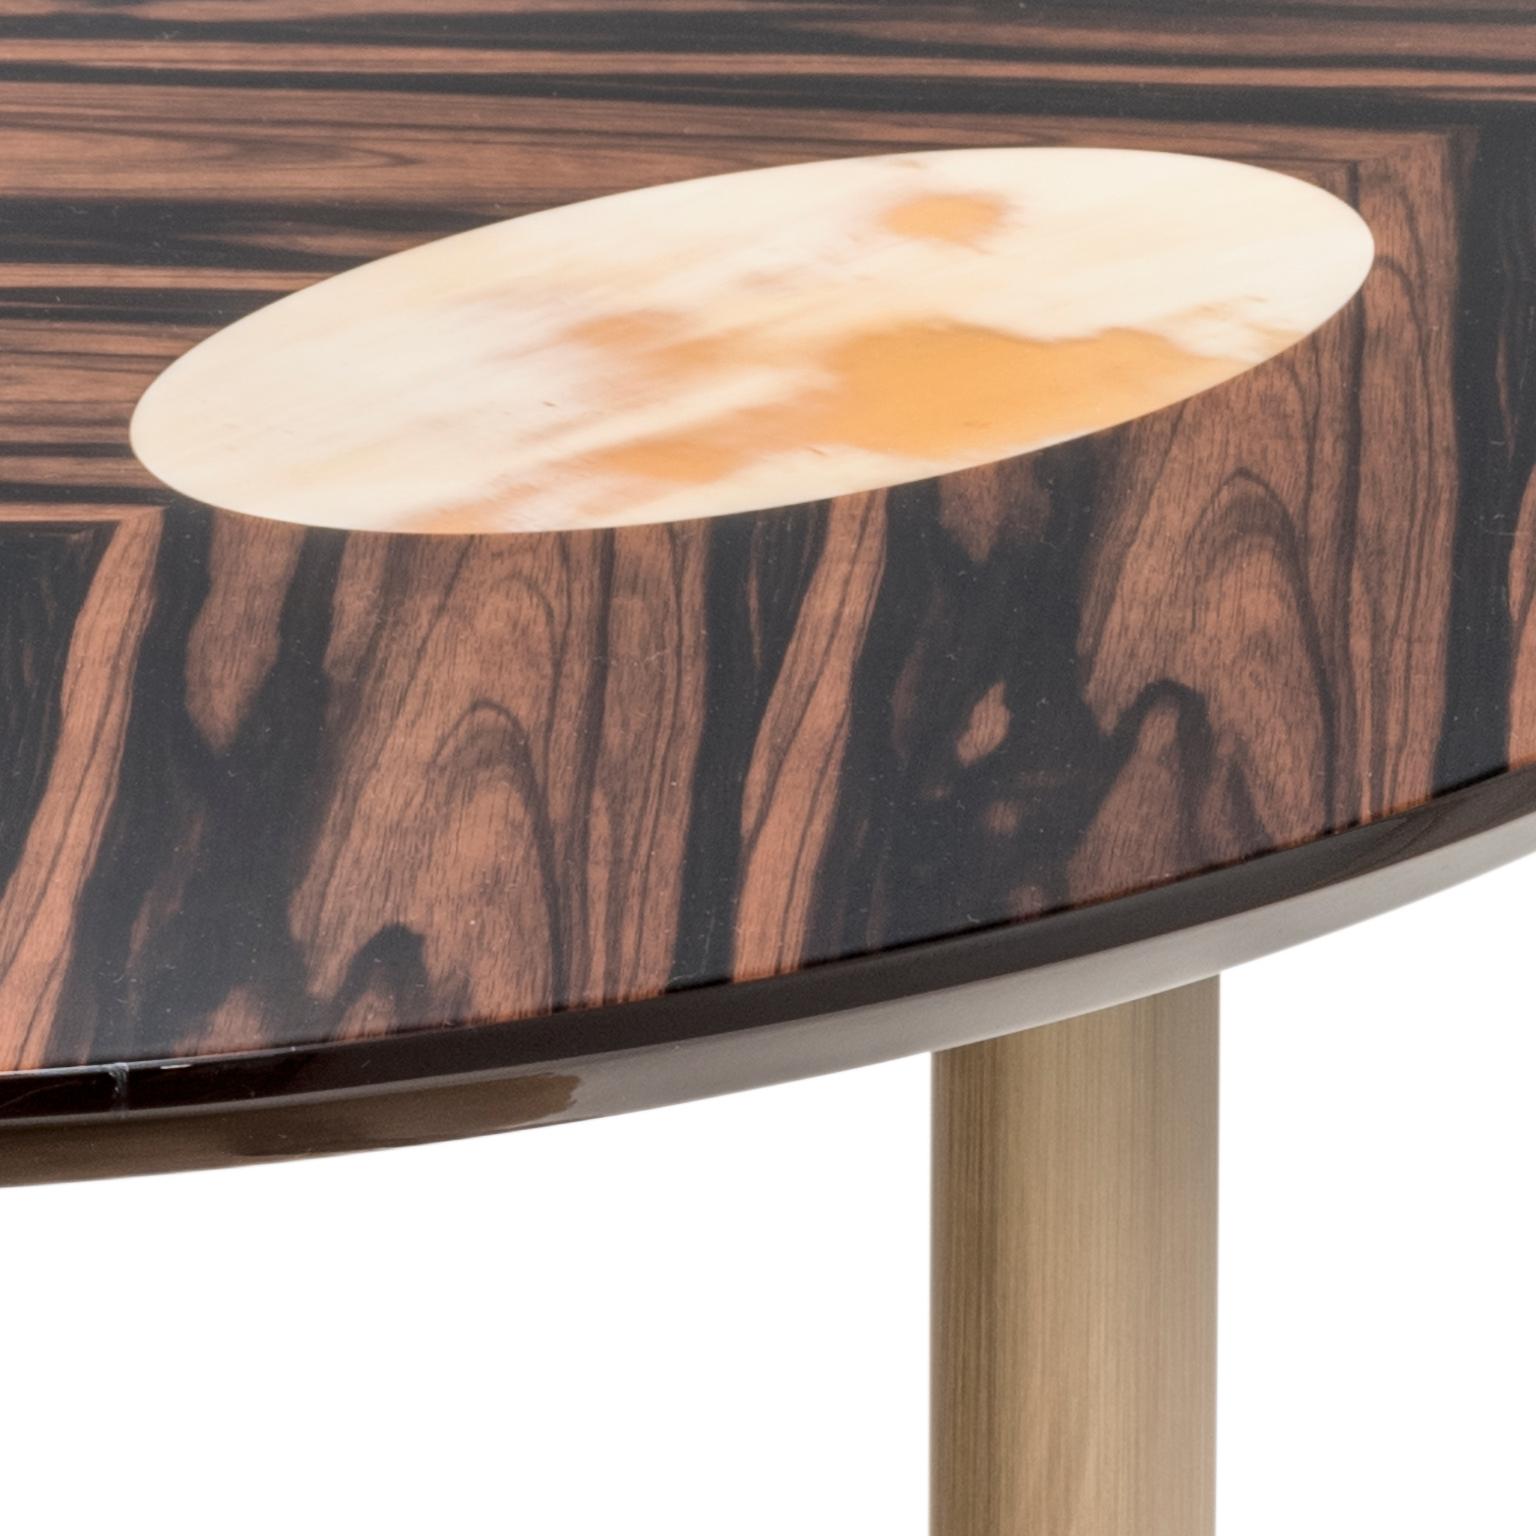 Der Keplero Beistelltisch verspricht, sowohl elegant als auch praktisch zu sein, um alle wichtigen Dinge in Reichweite des Sofas aufzubewahren, und zeigt dabei Handwerkskunst auf höchstem Niveau. Die ovale Tischplatte aus Makassar-Ebenholzfurnier